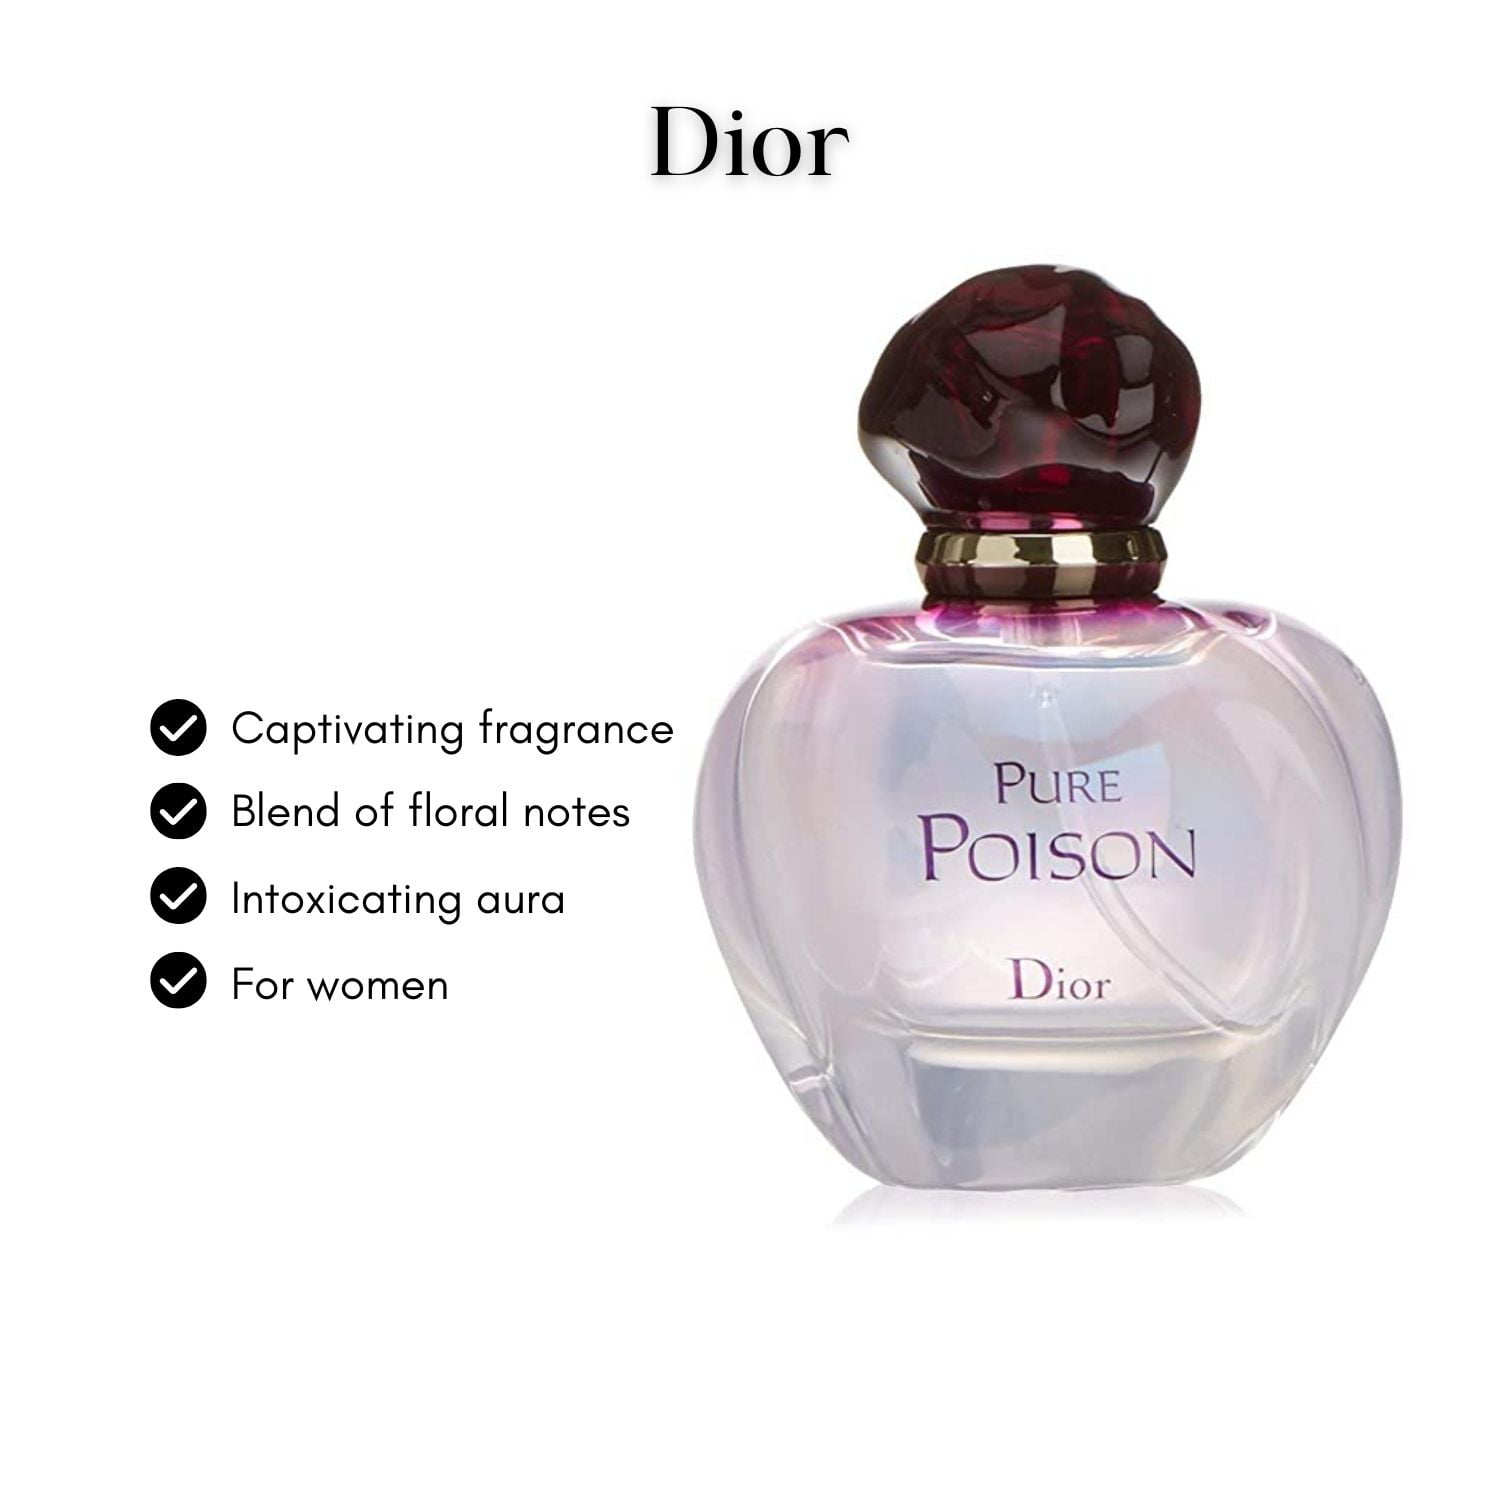 Pure Poison by Dior 3.4 oz Eau de Parfum Spray OPEN BOX NEW